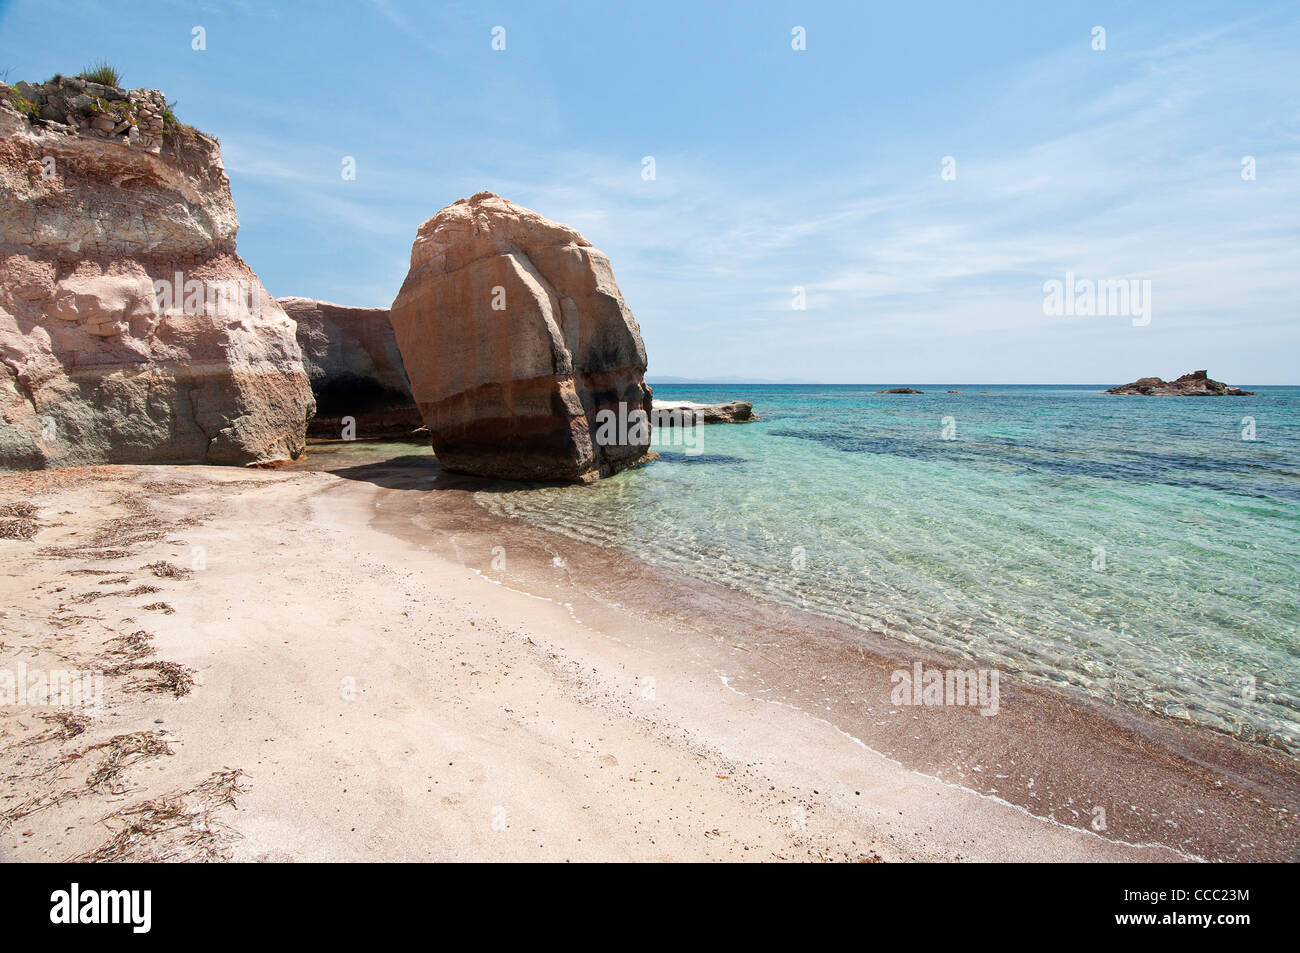 Geniò beach,Carloforte, St Pietro Island, Sulcis Iglesiente, Carbonia Iglesias, Sardinia, Italy, Europe Stock Photo